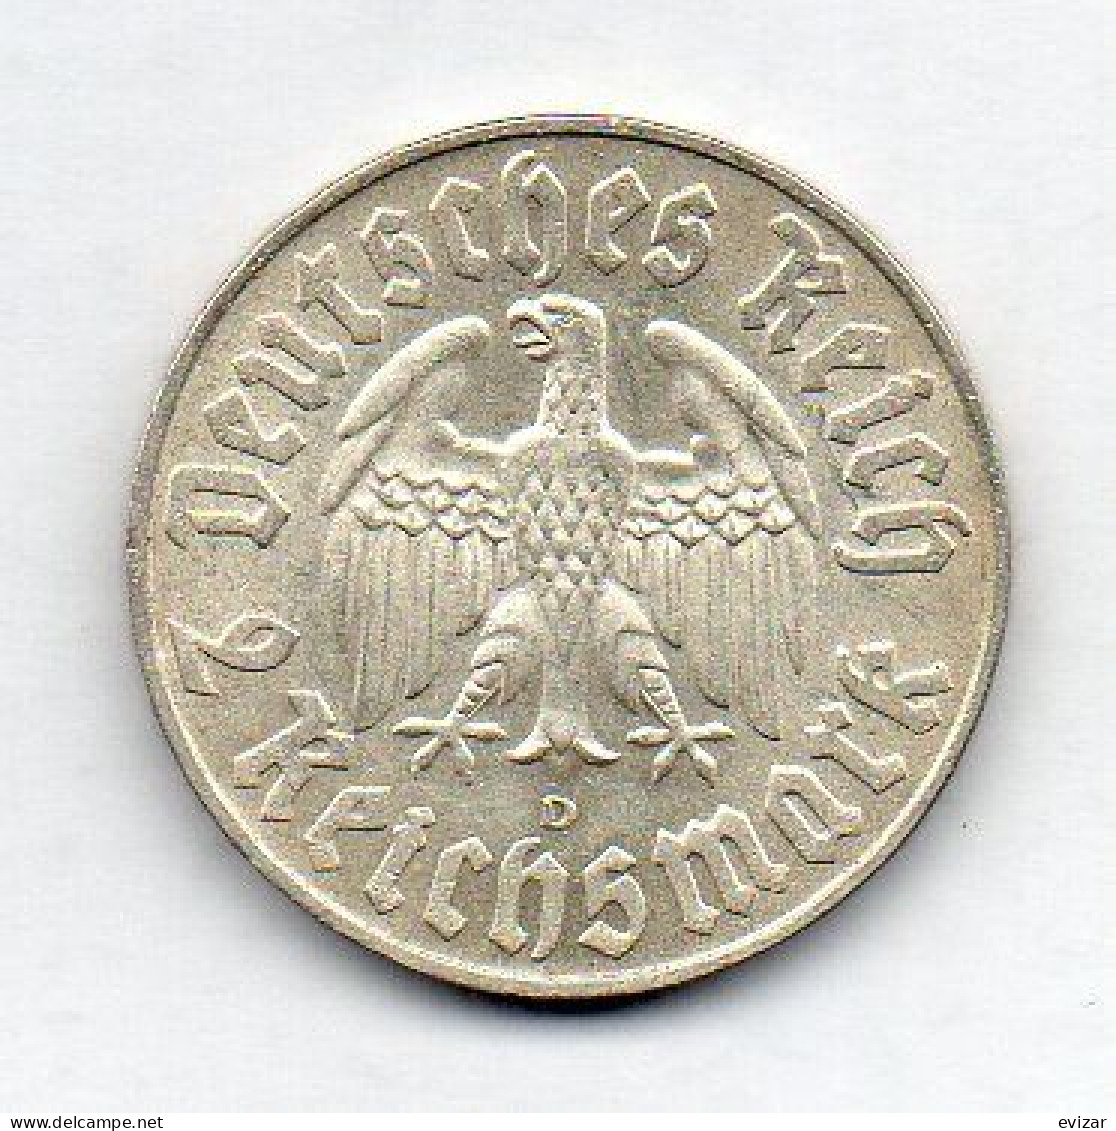 GERMANY - THIRD REICH, 2 Reichs Mark, Silver, Year 1933-D, KM # 79 - 2 Reichsmark